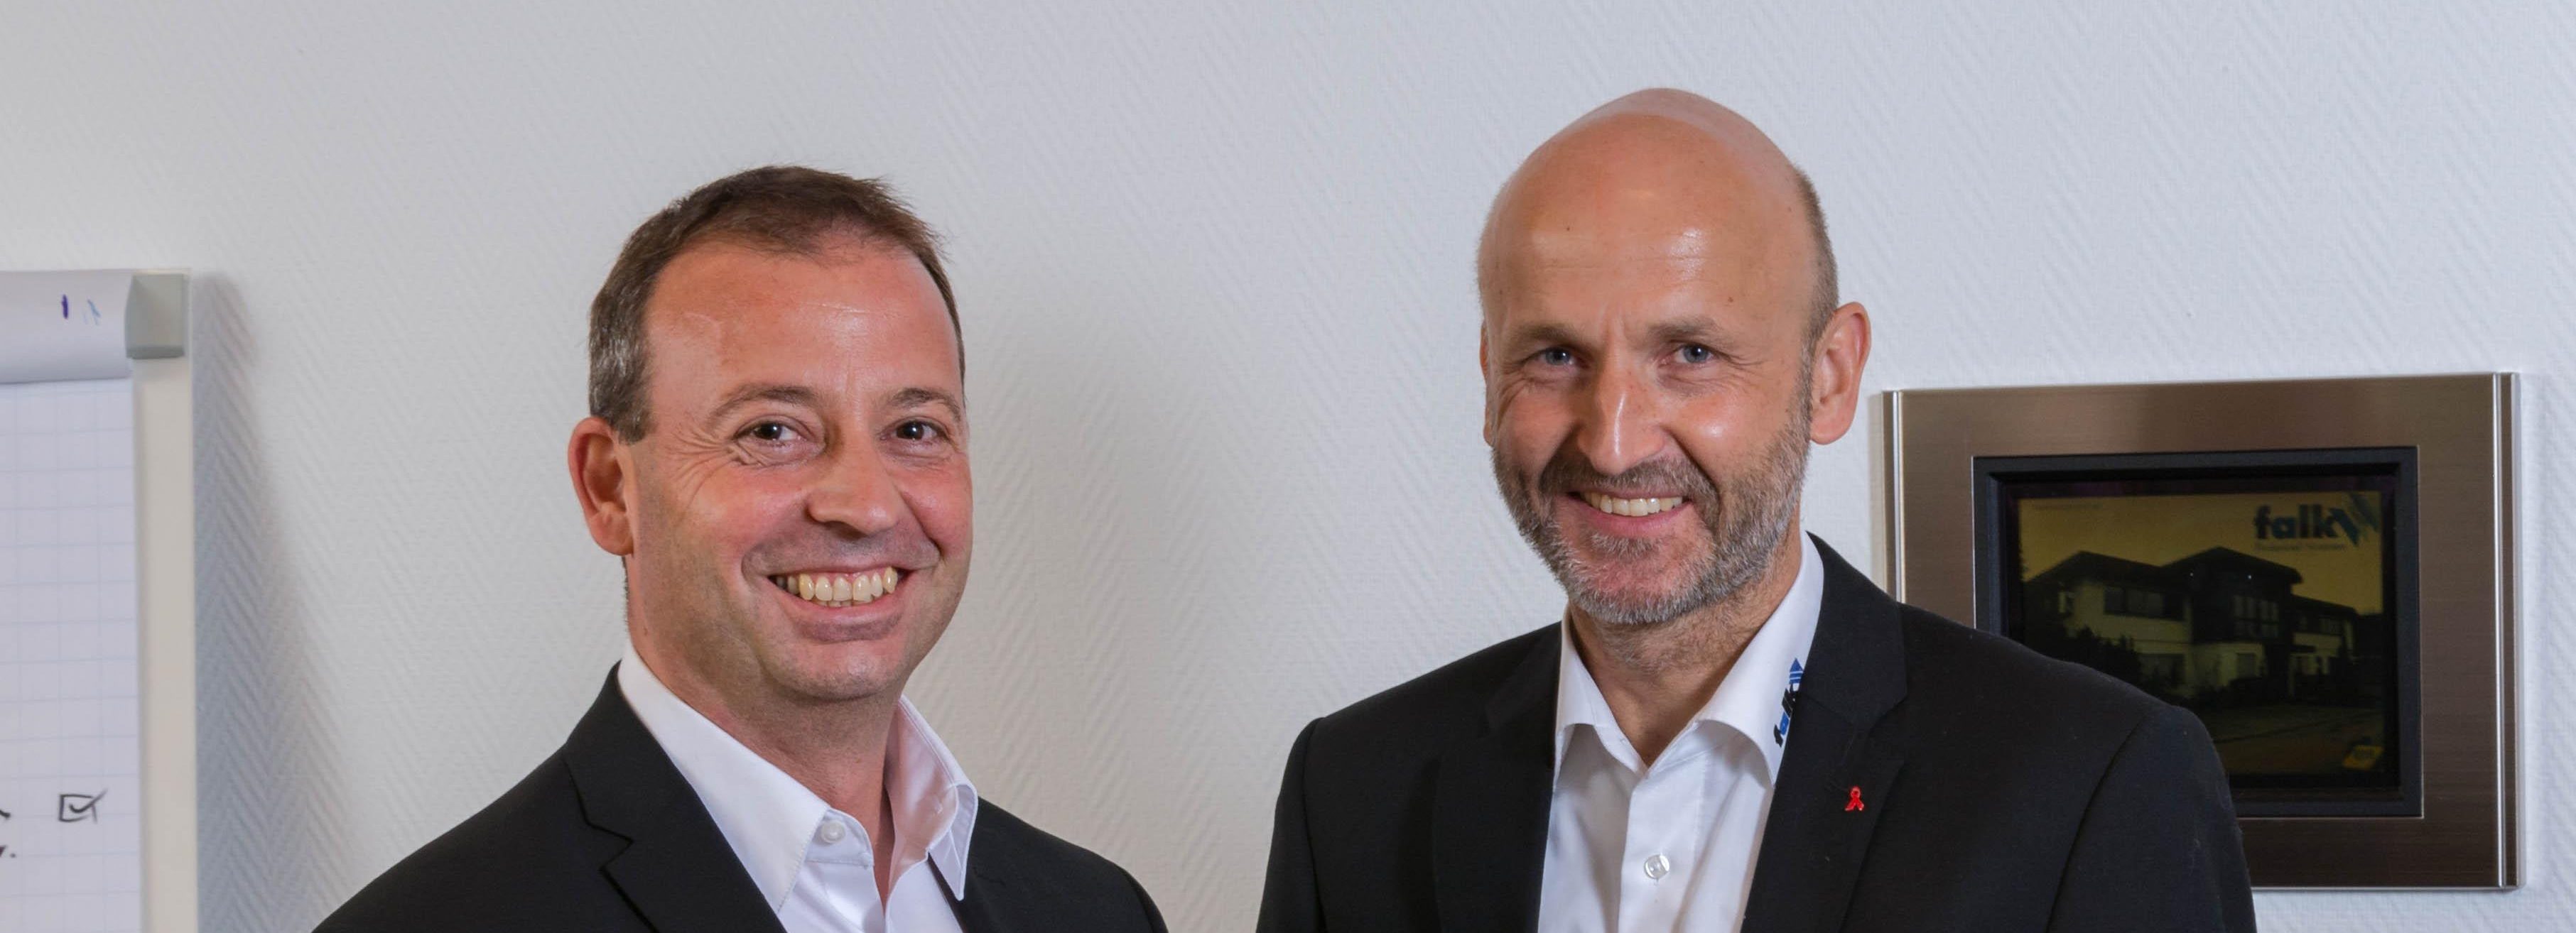 Falk GmbH Technical Systems - die Geschäftsführer Andreas Falk und Heinz-Peter Wolf